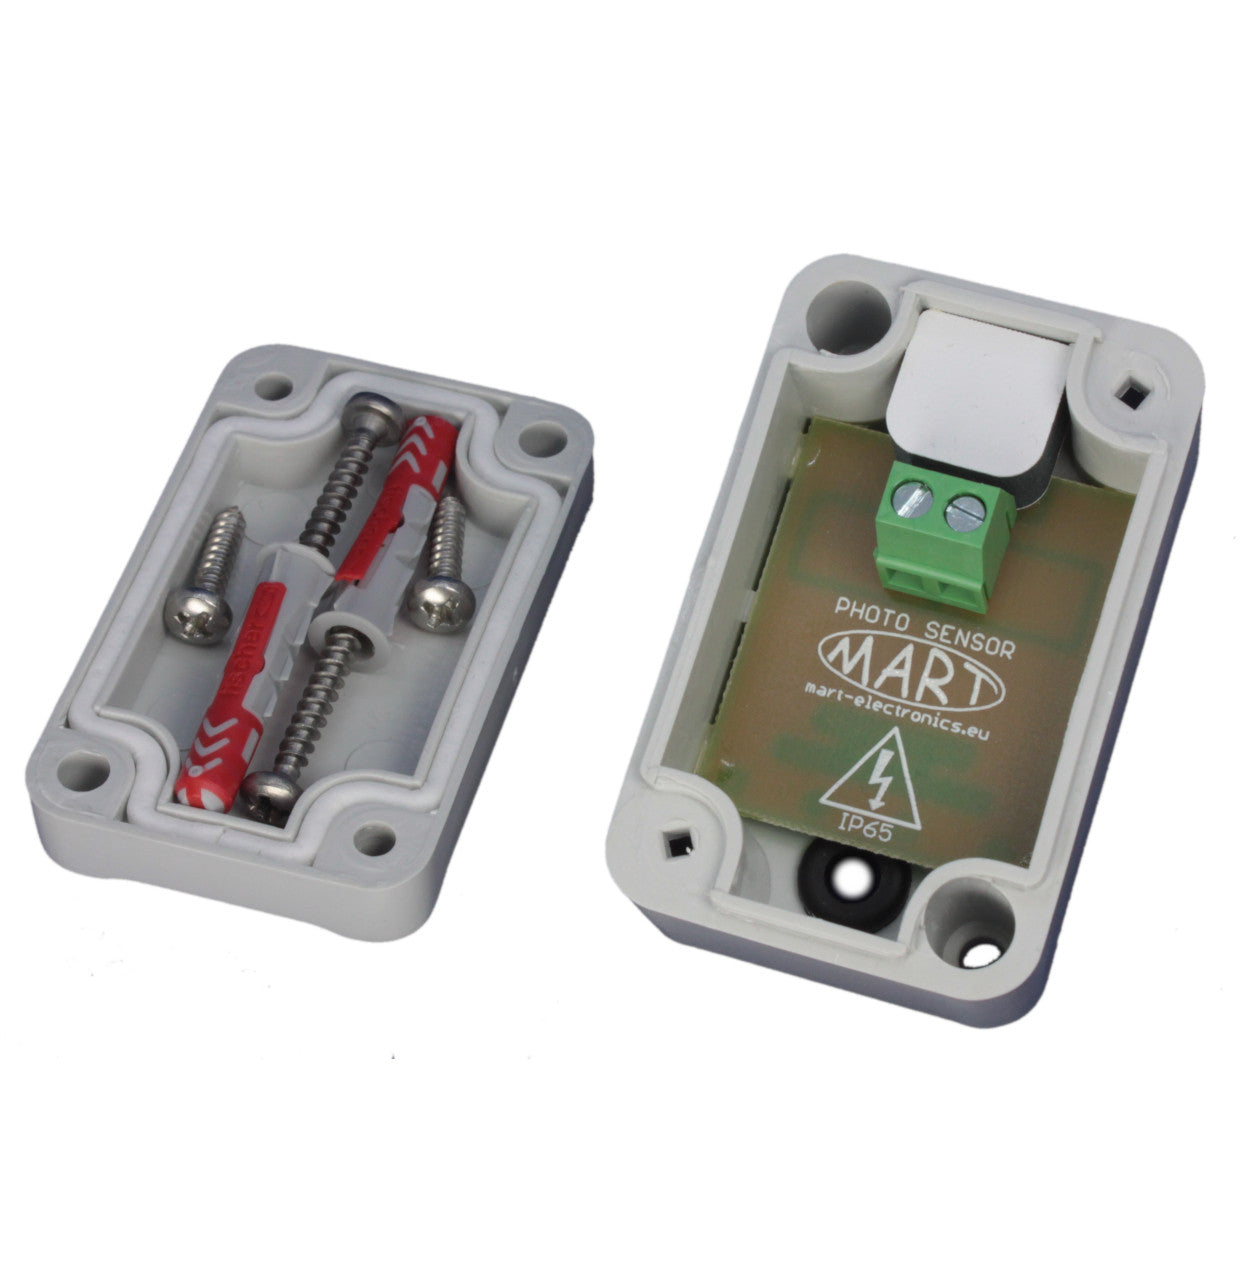 TS-41-4 - Dämmerungsschalter 230V - Hutschiene - Sensorbox (Gummitülle) - MART-Electronics